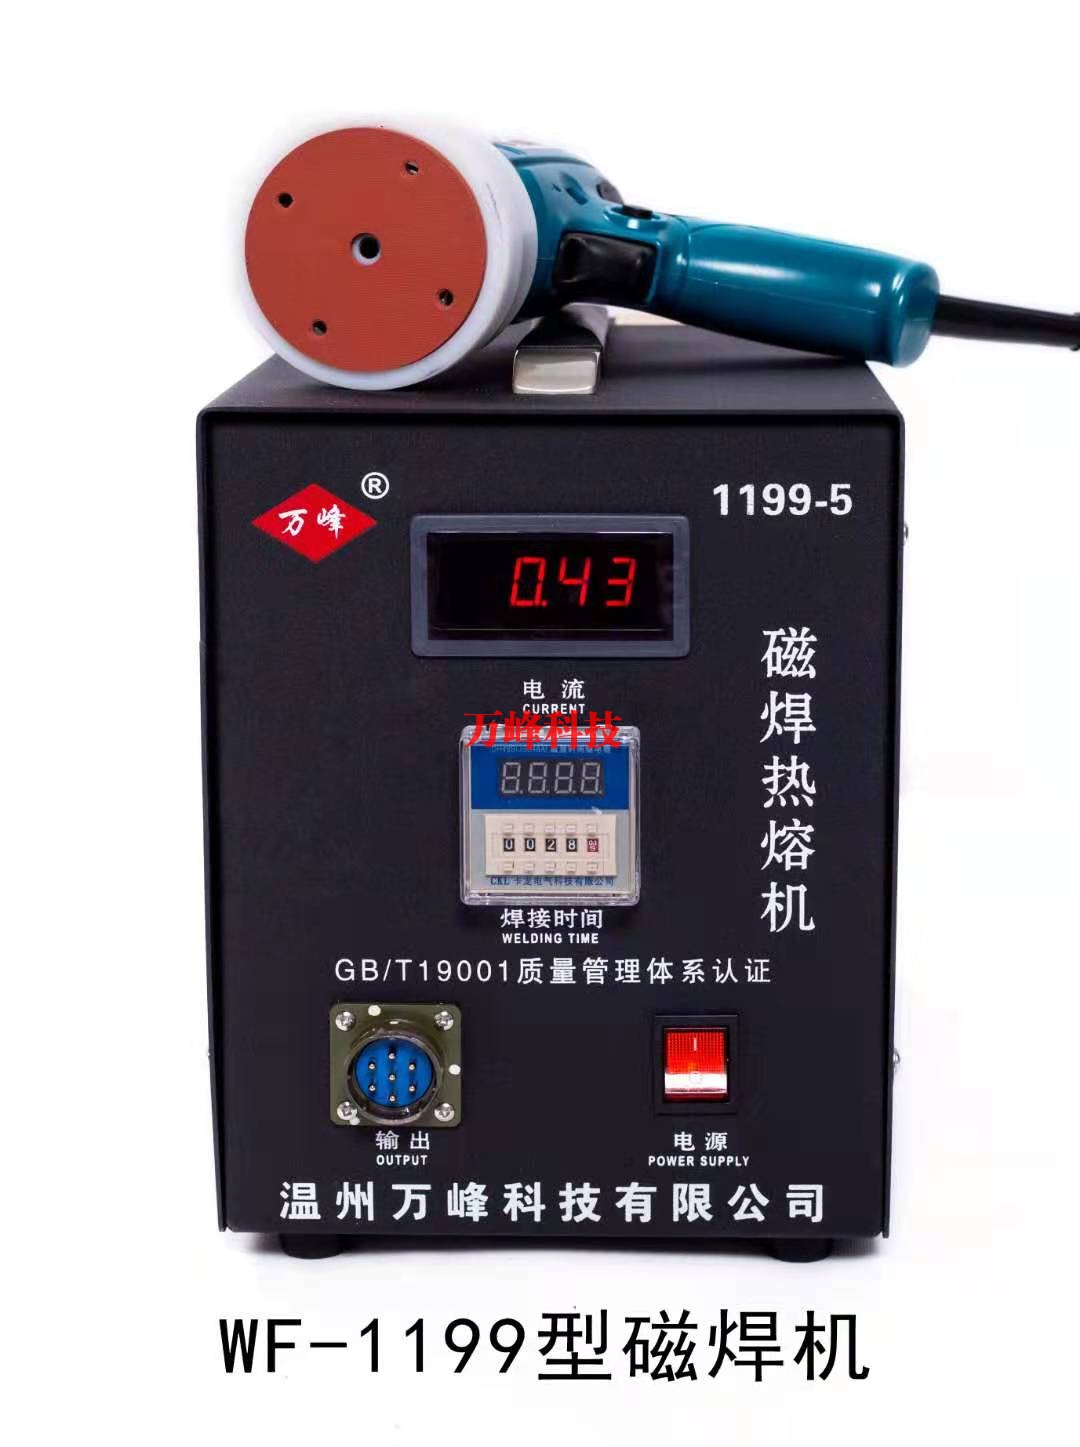 武汉WF-1199型磁焊热熔机